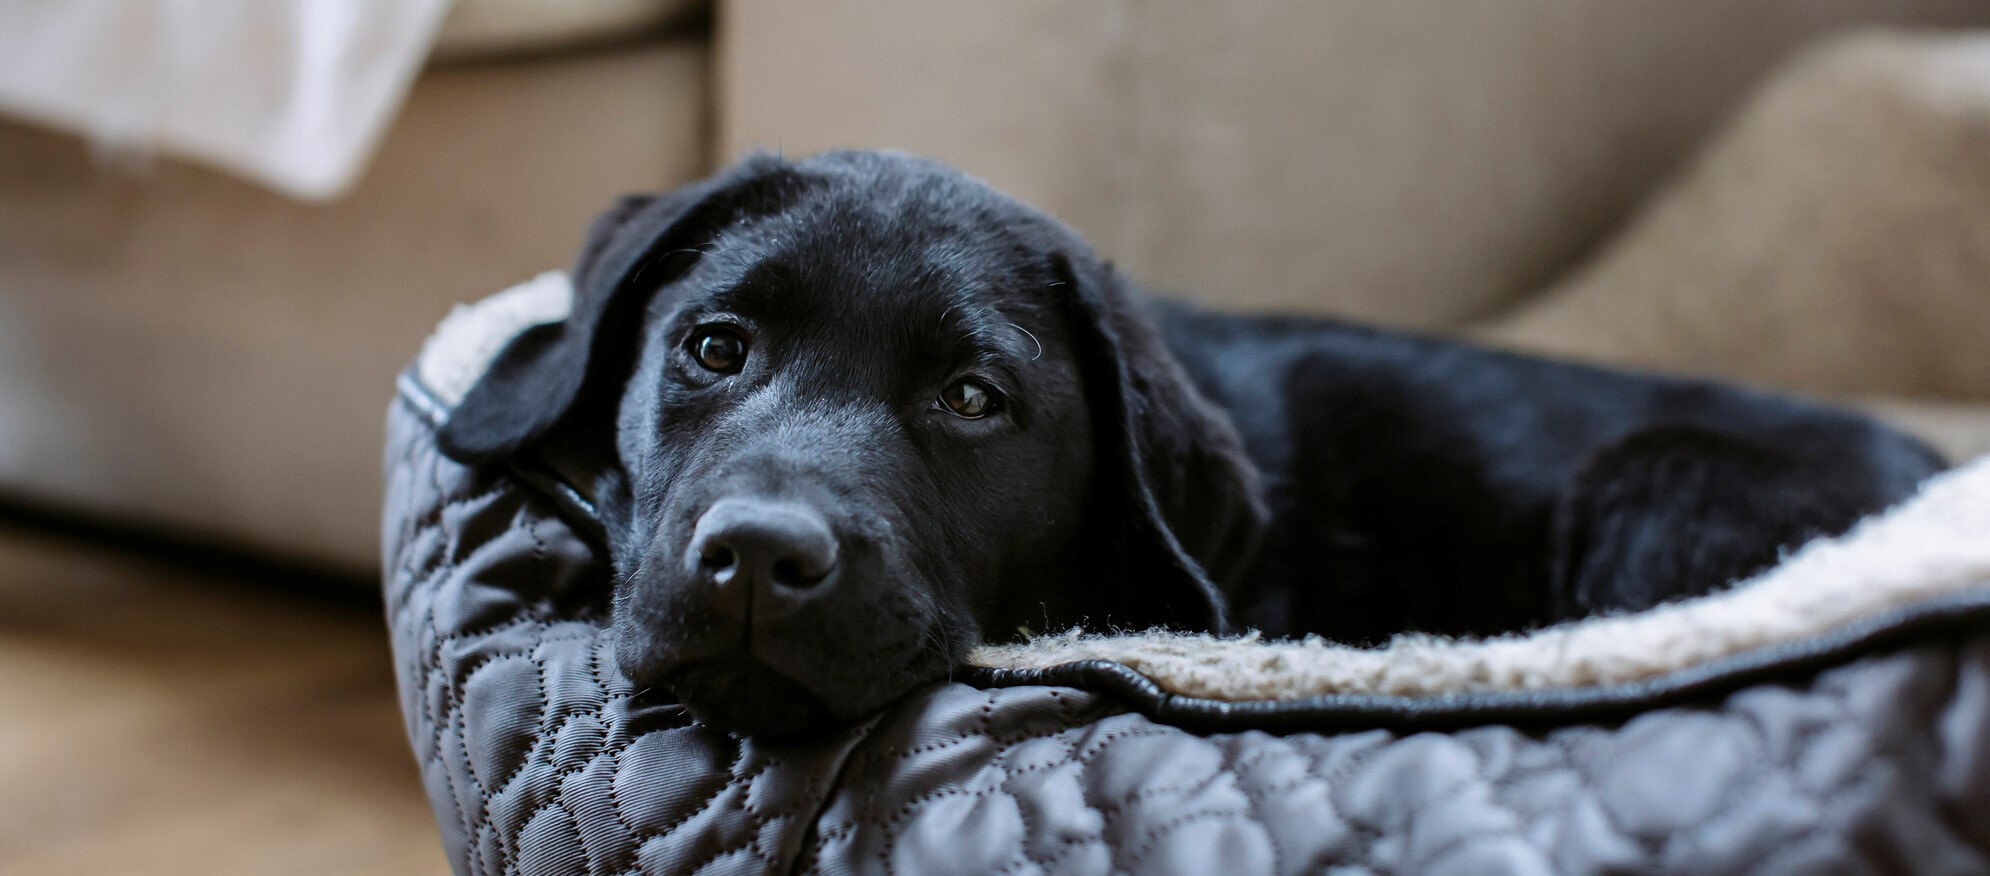 Black Labrador puppy in his bed looking to camera